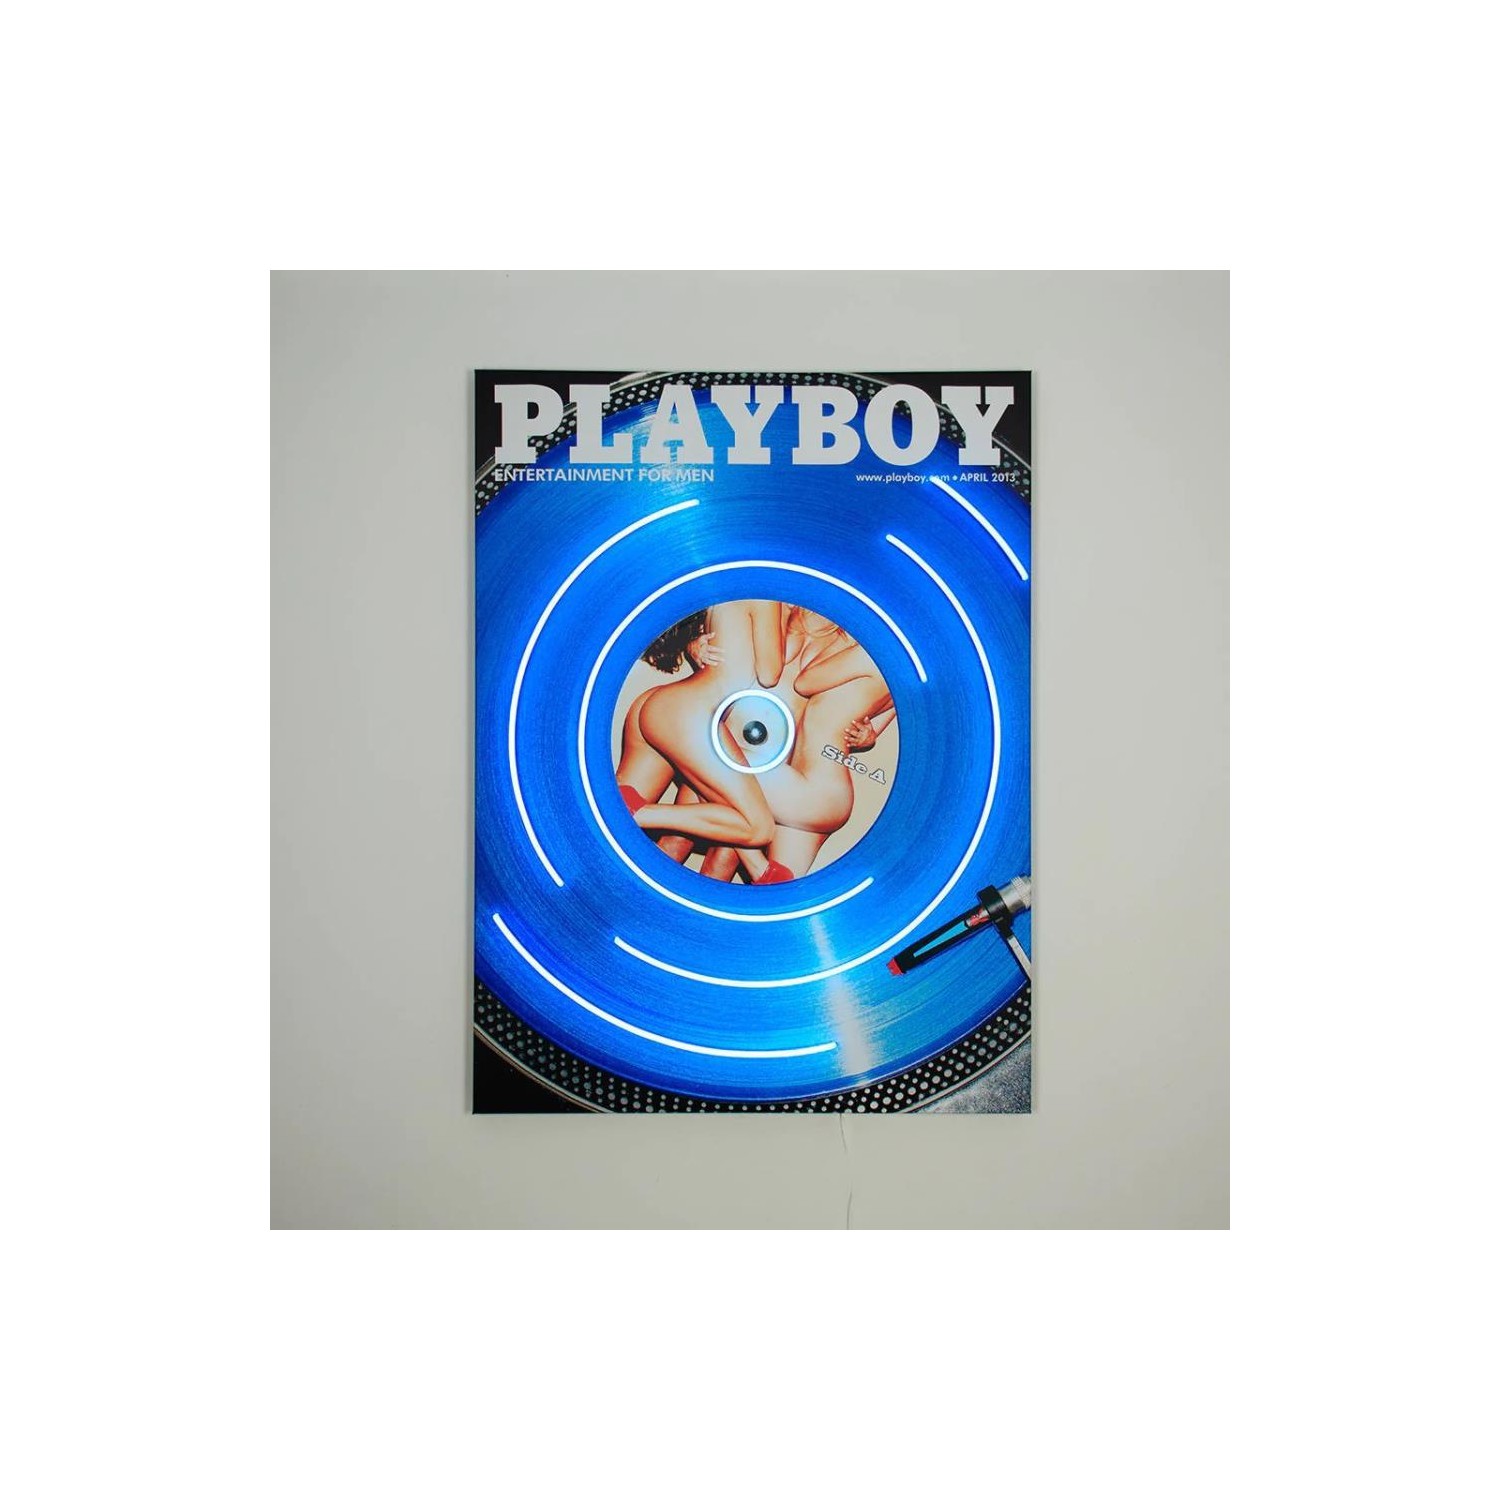 Cuadro Locomocean Playboy Vinyl Cover